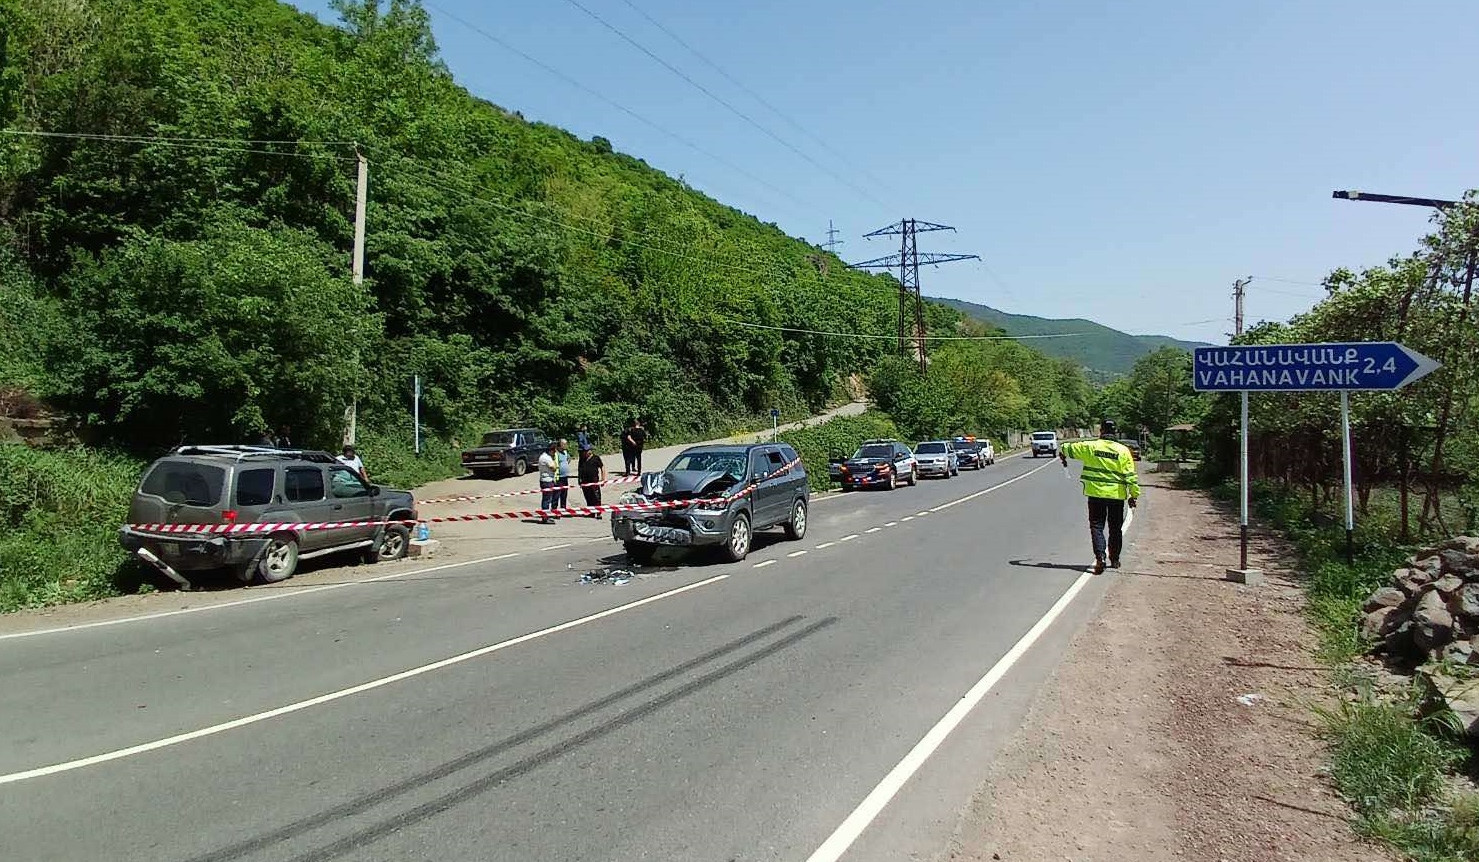 Սյունիքի մարզի Վահանավանք թաղամասի մոտակայքում բախվել են ավտոմեքենաներ. կա տուժած